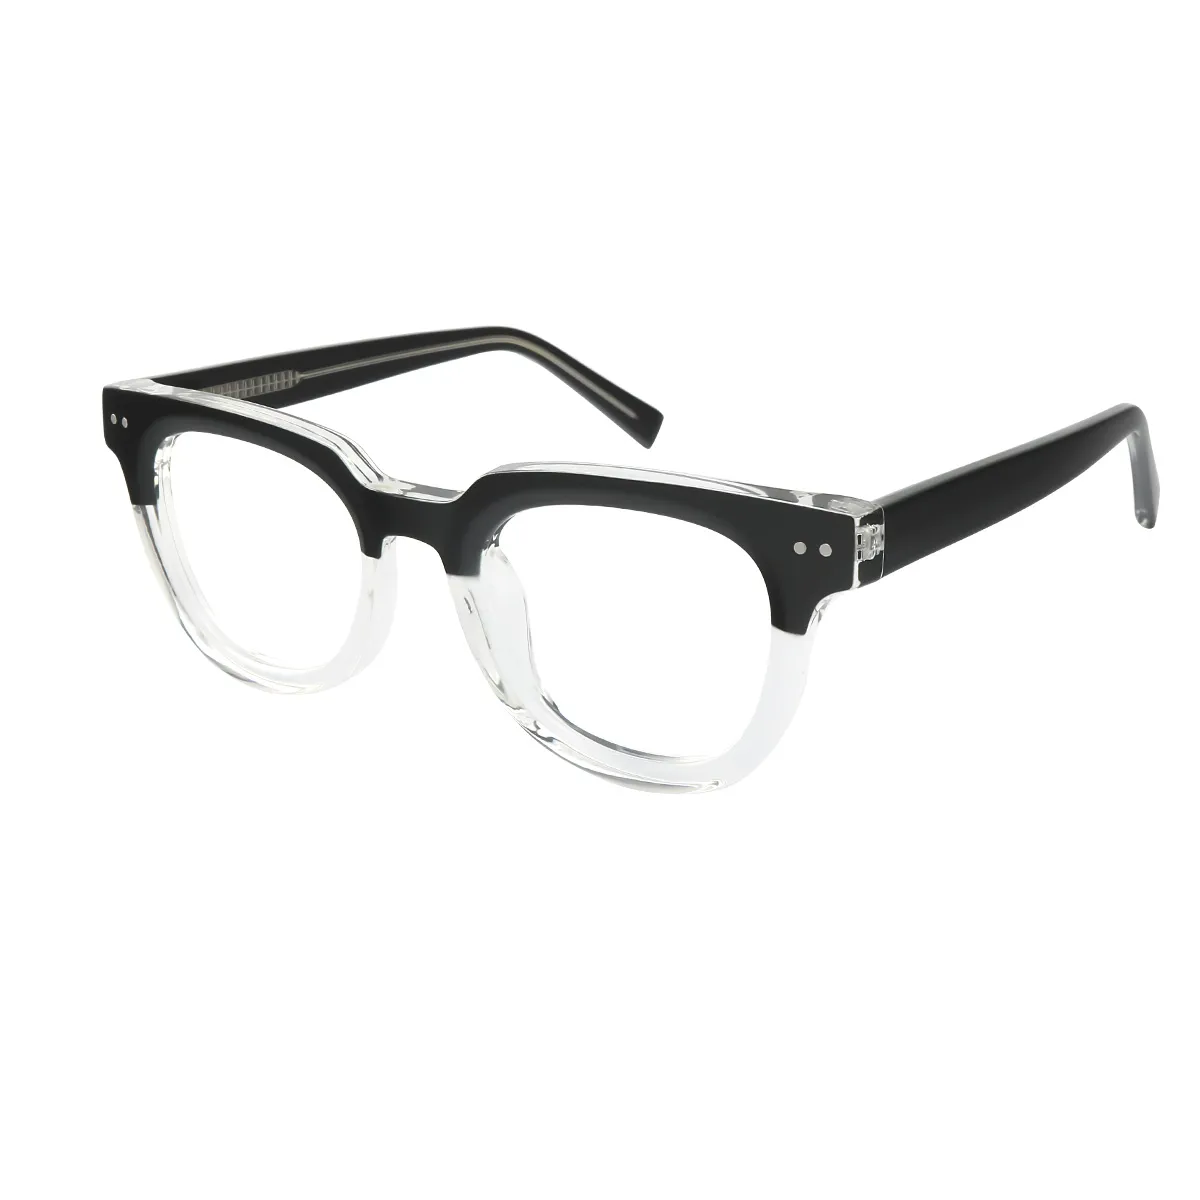 Fashion Square Tortoiseshell Glasses for Men & Women